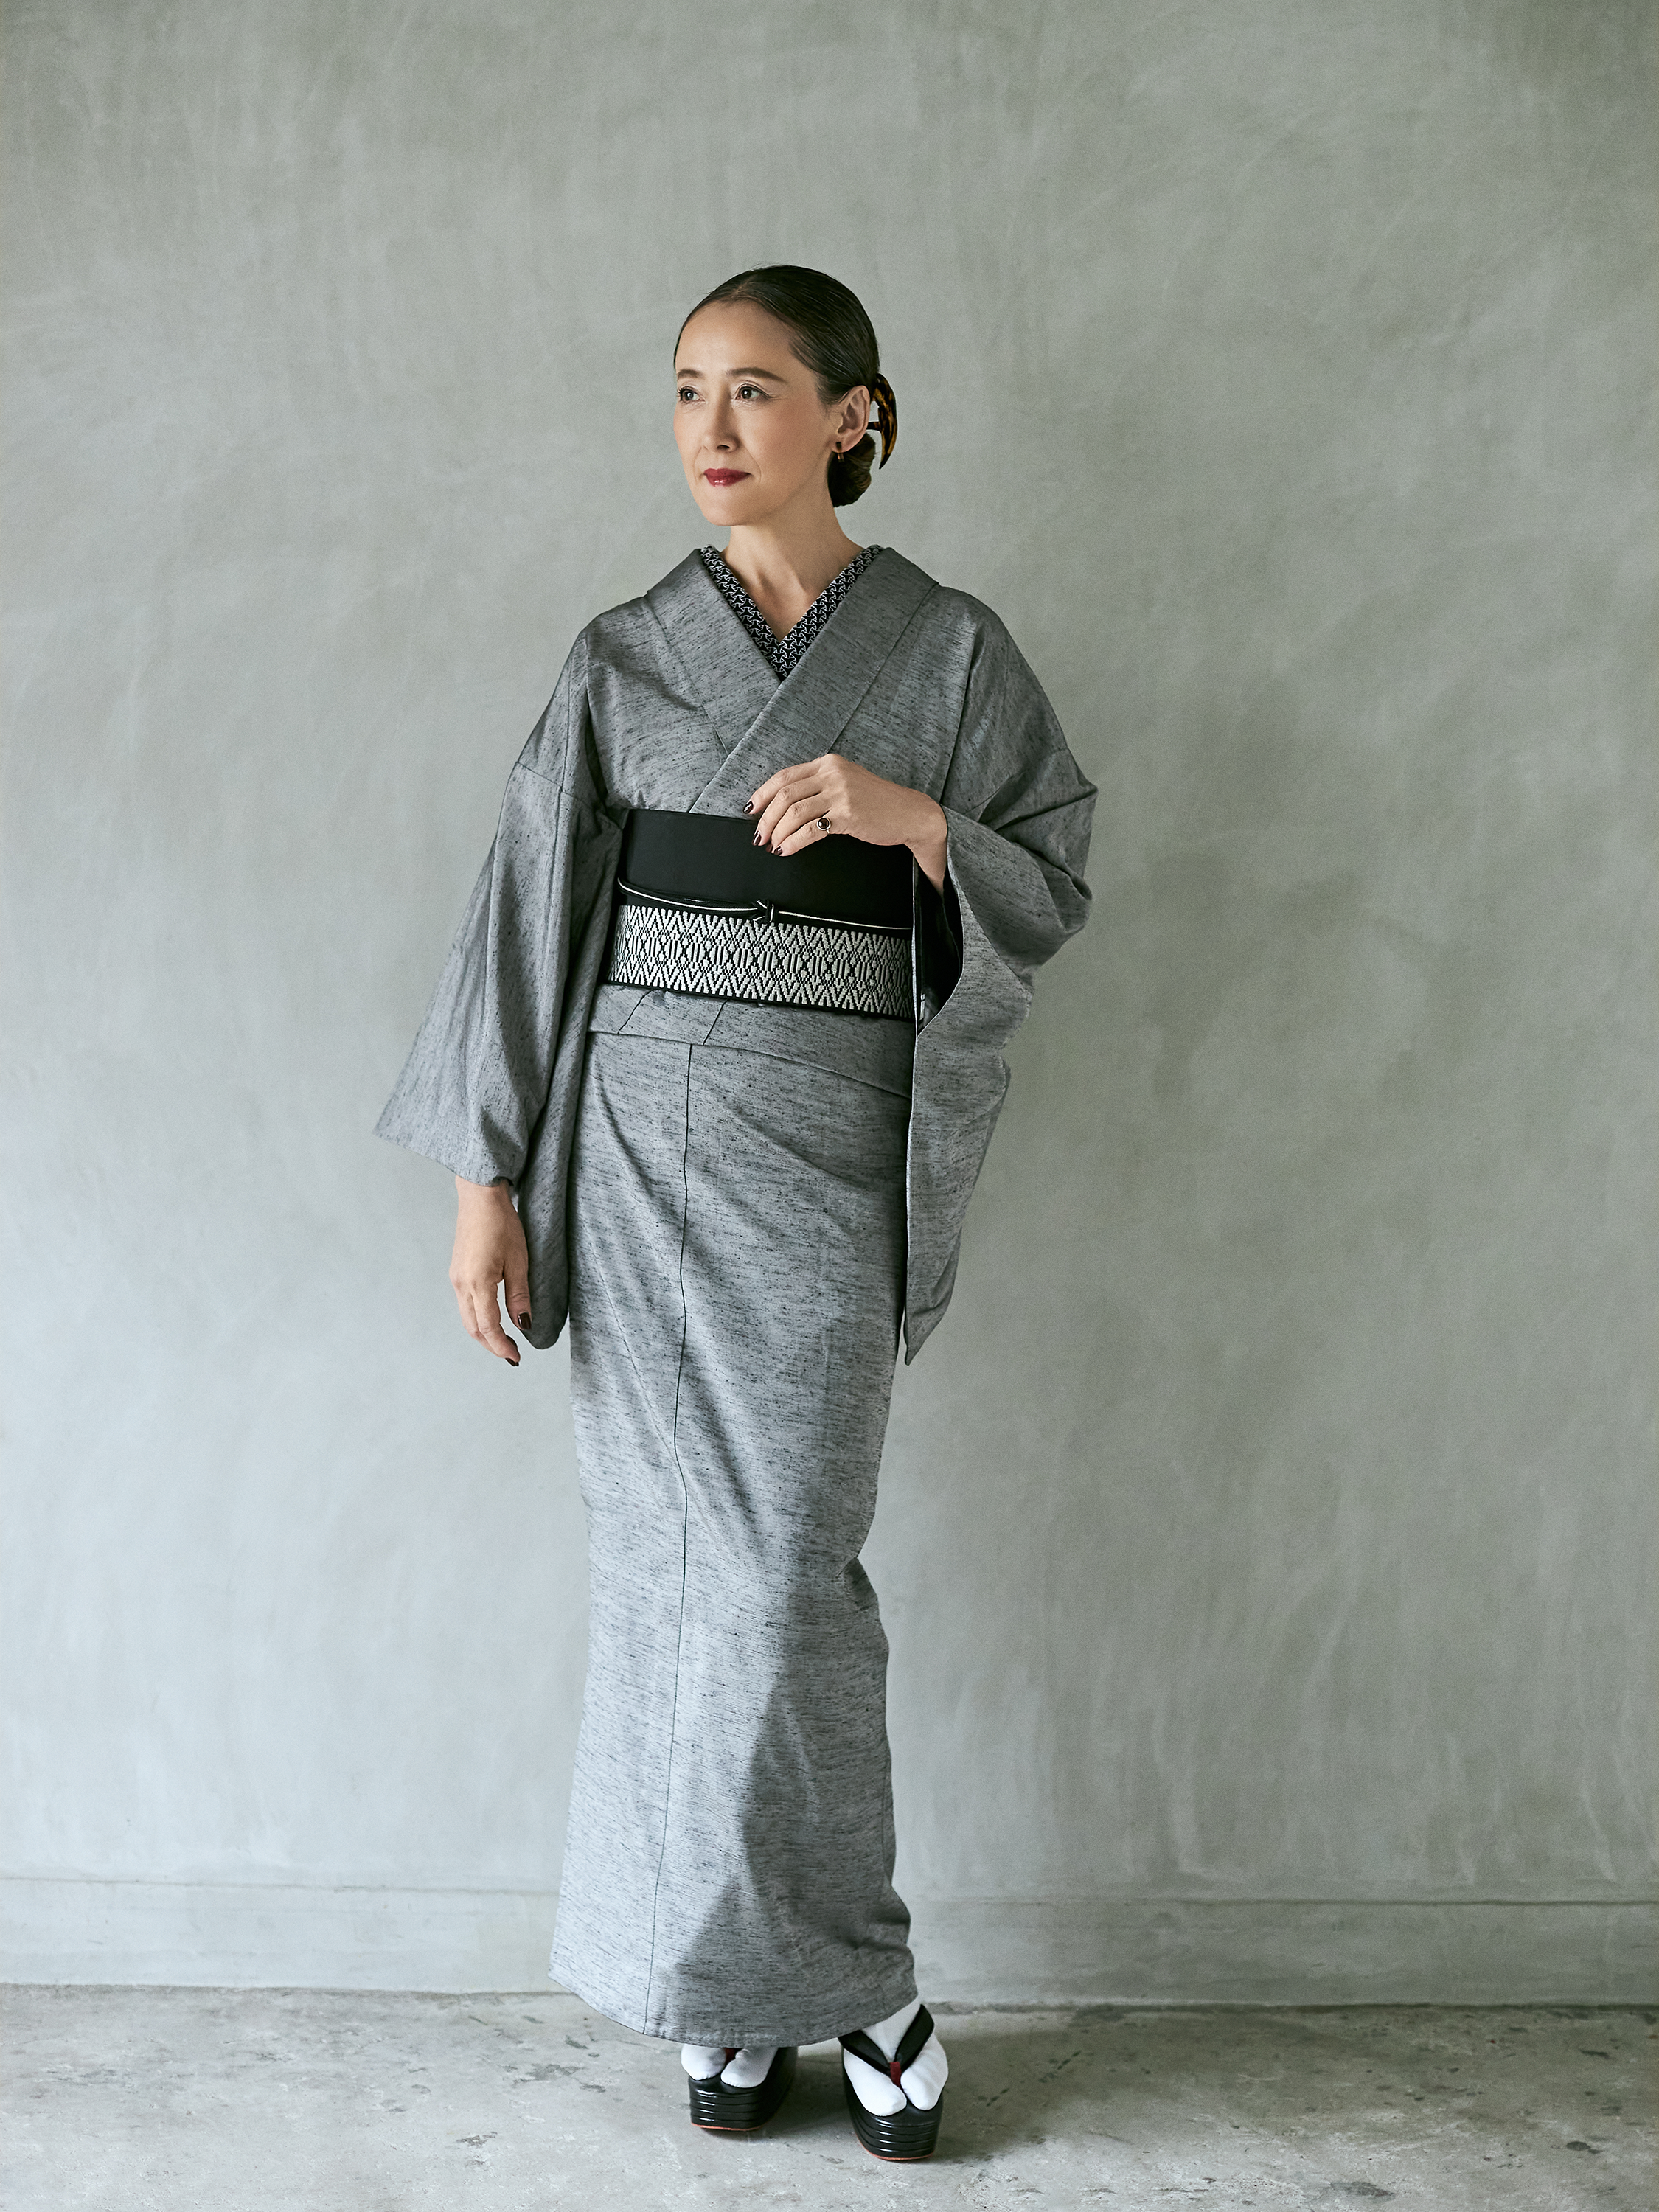 Fabric Yonezawa Ori Juyo Tsumugi “Hibiki” Gray